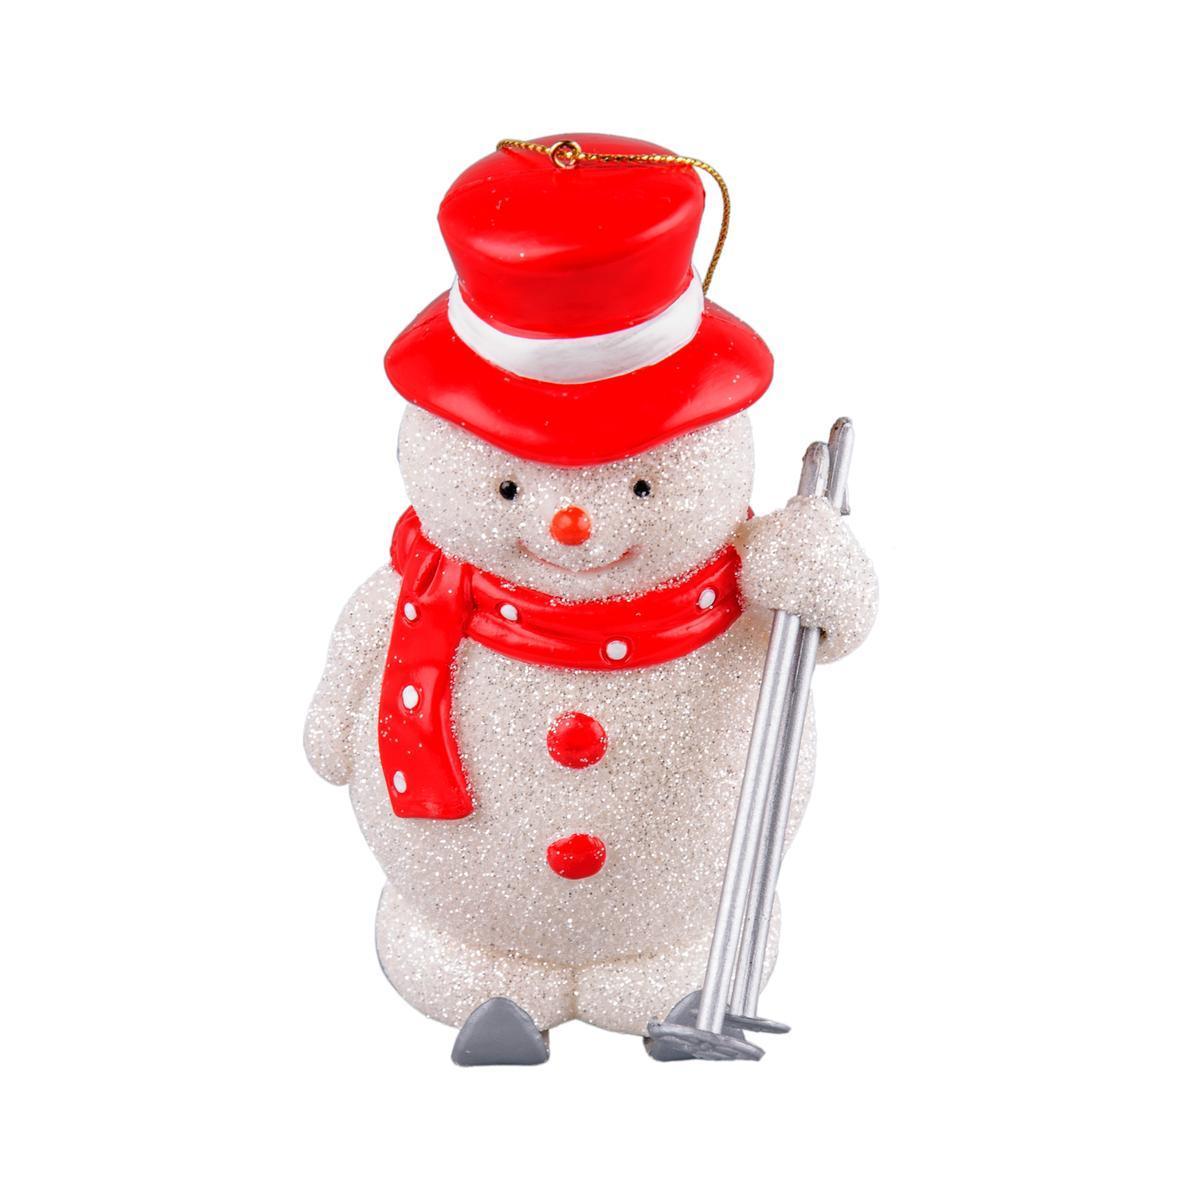 Suspension bonhomme de neige - Plastique - 6,8 x 8,6 x H 11,7 cm - Blanc et rouge